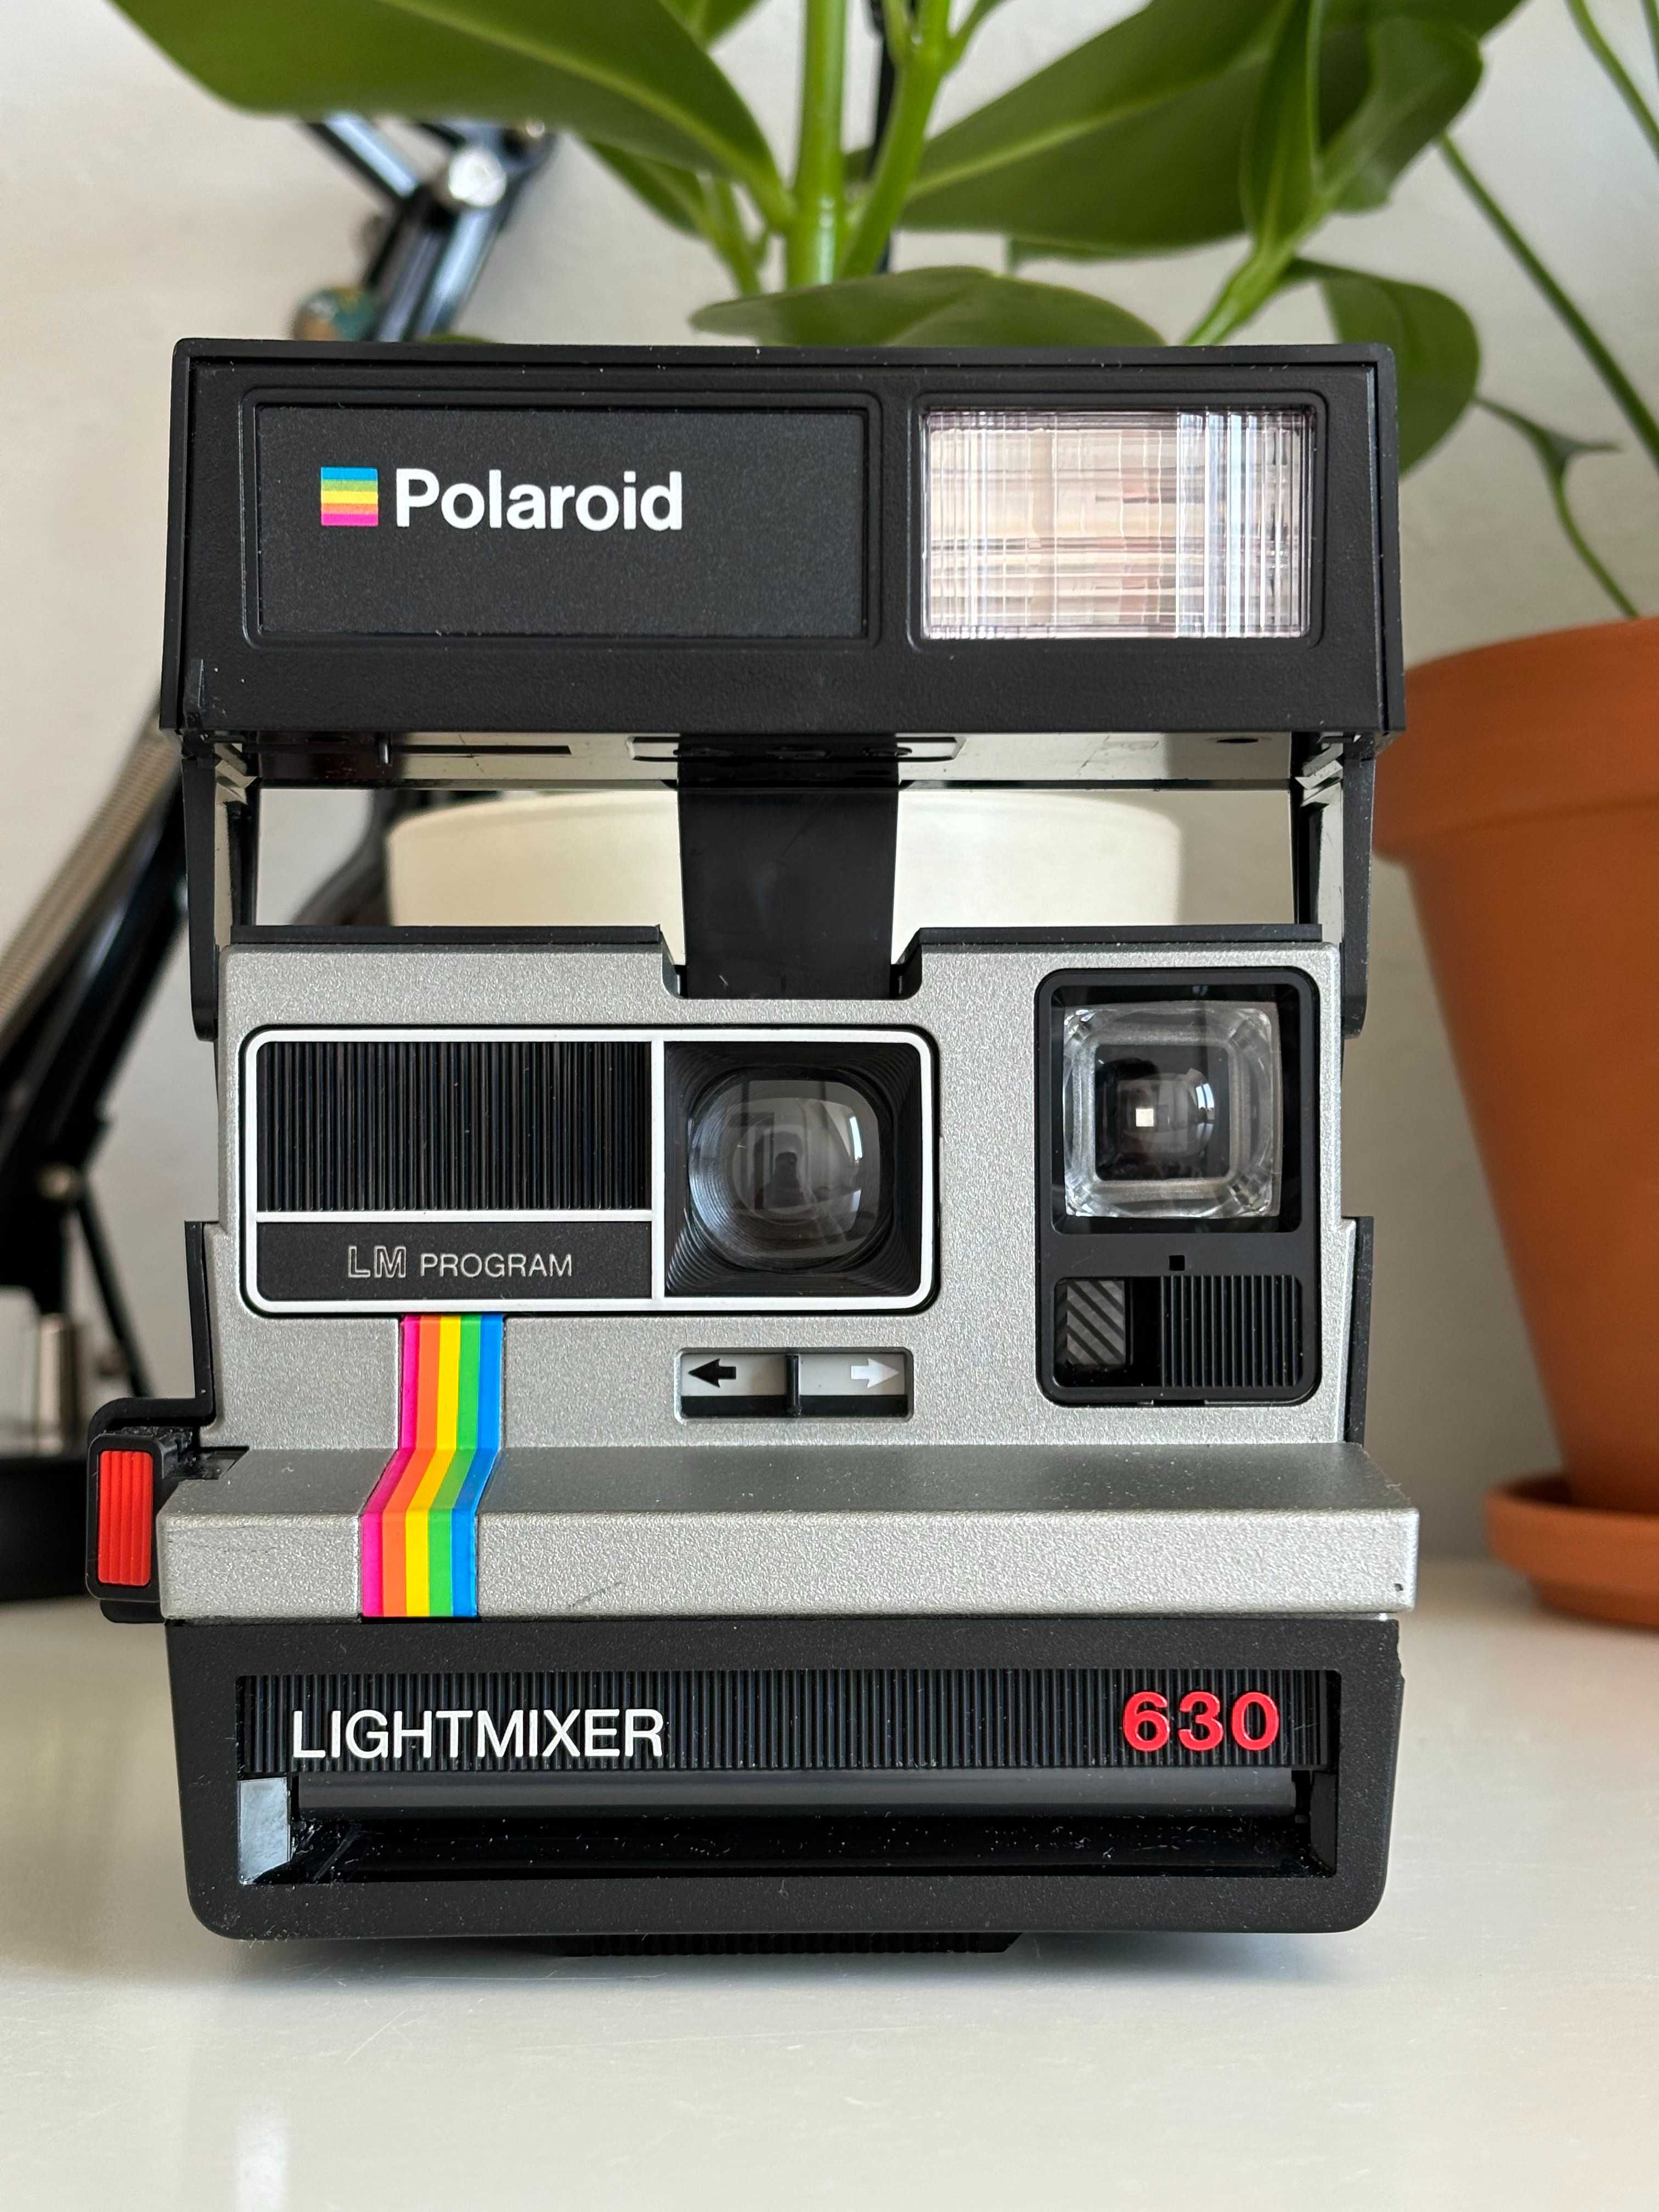 Aparat Polaroid 630 Lightmixer